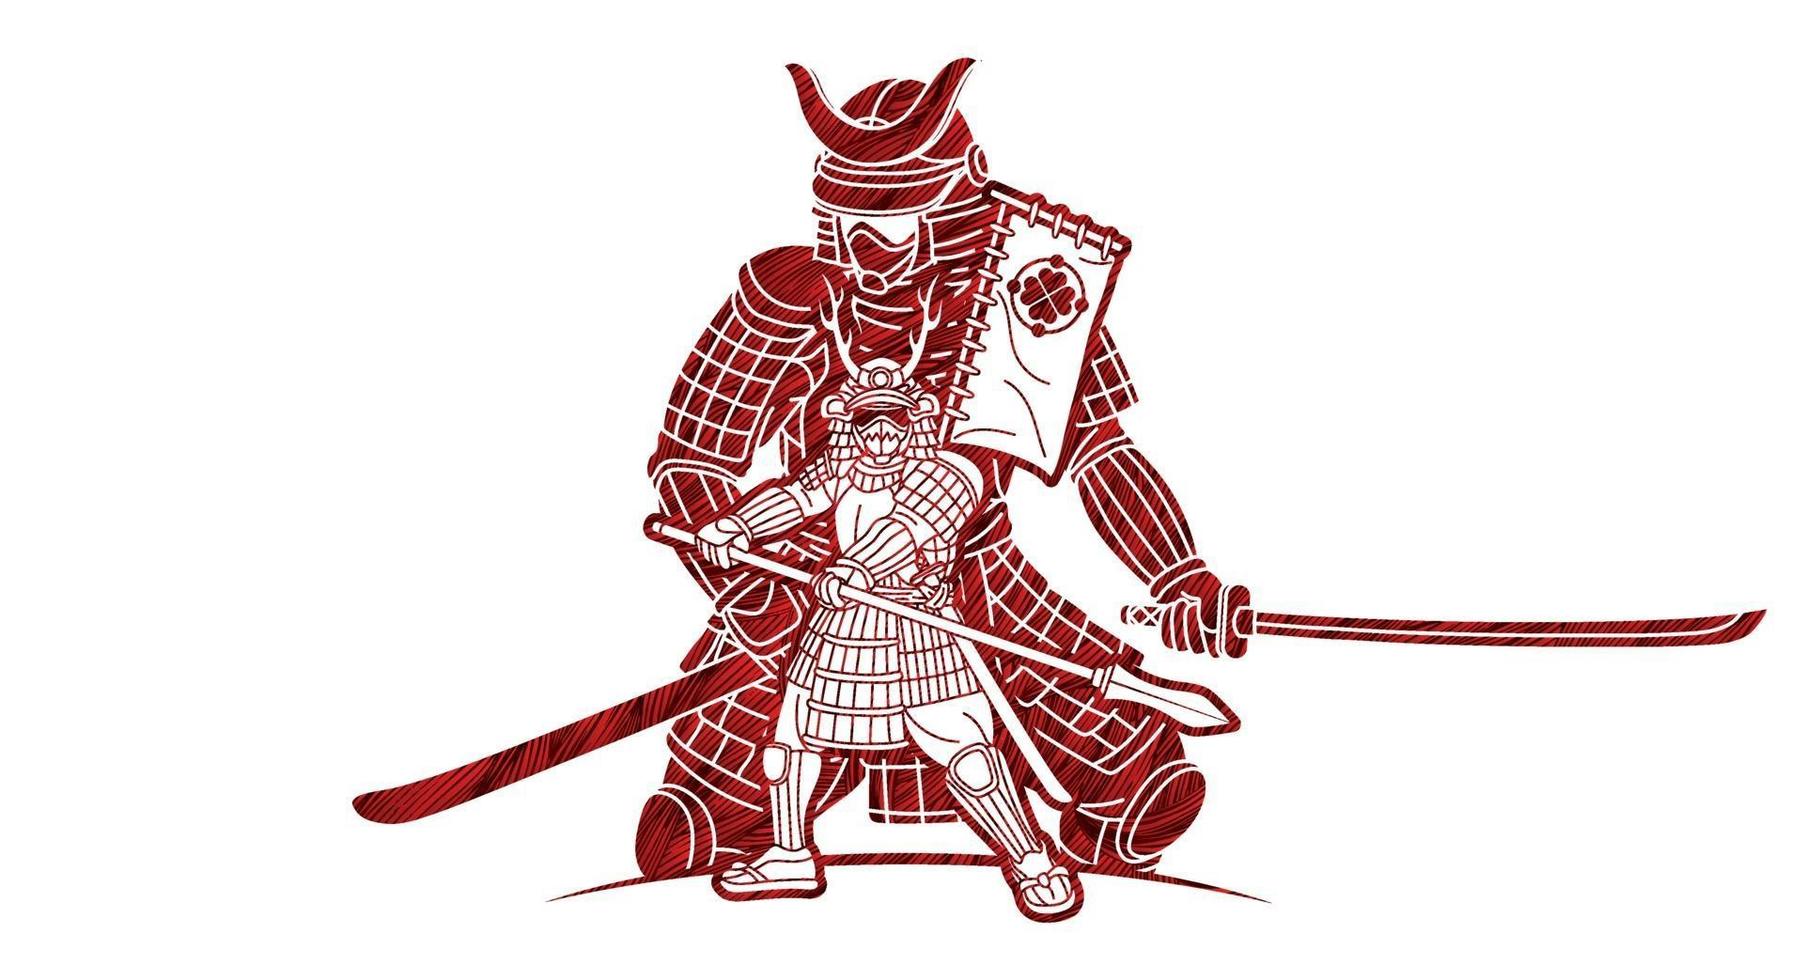 Samurai-Krieger japanischer Kämpfer Ronin mit Waffen vektor